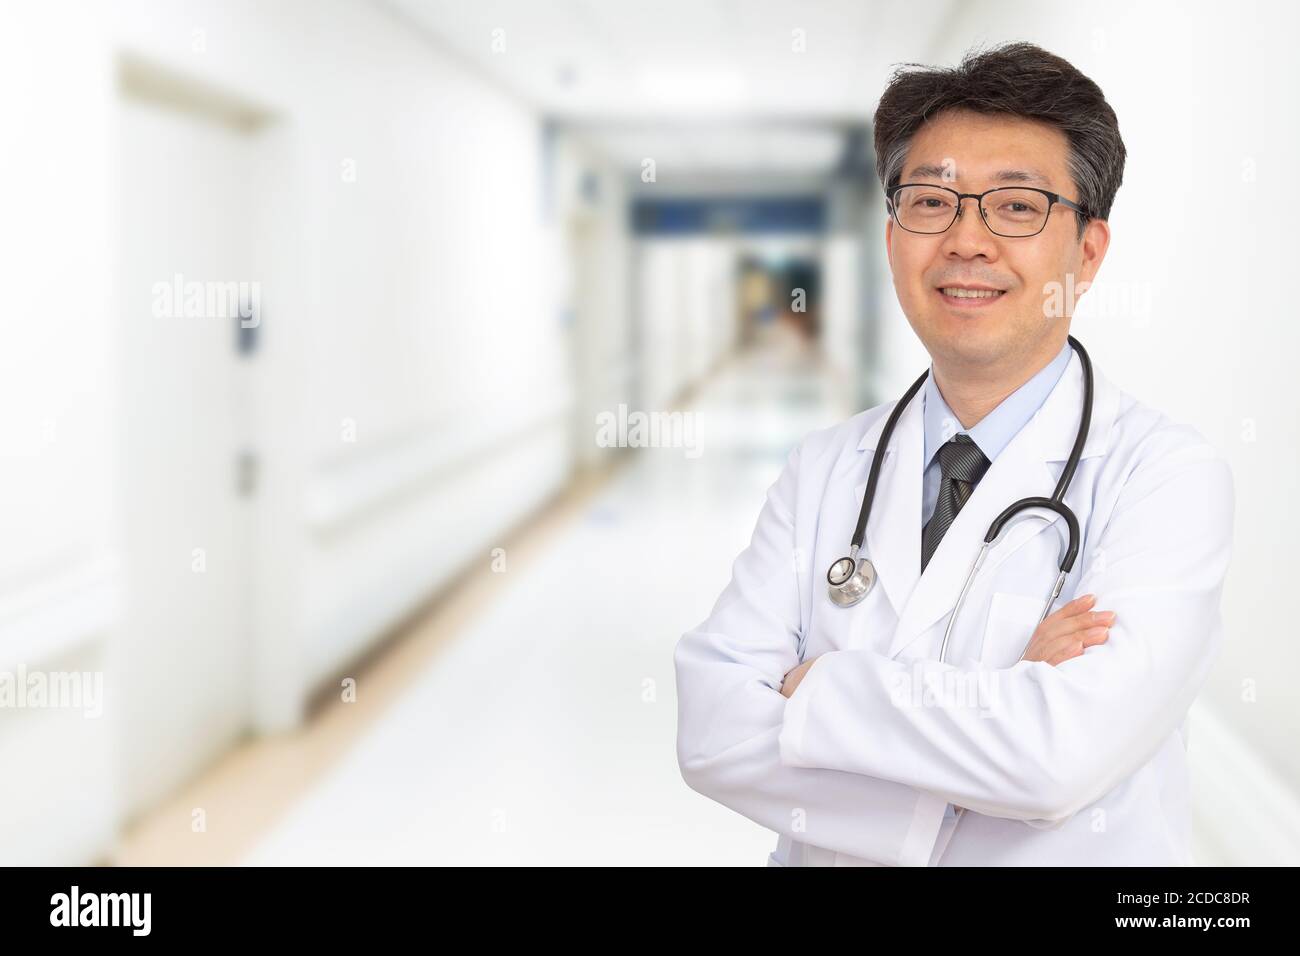 Un médecin asiatique d'âge moyen souriant dans le couloir de l'hôpital. Banque D'Images